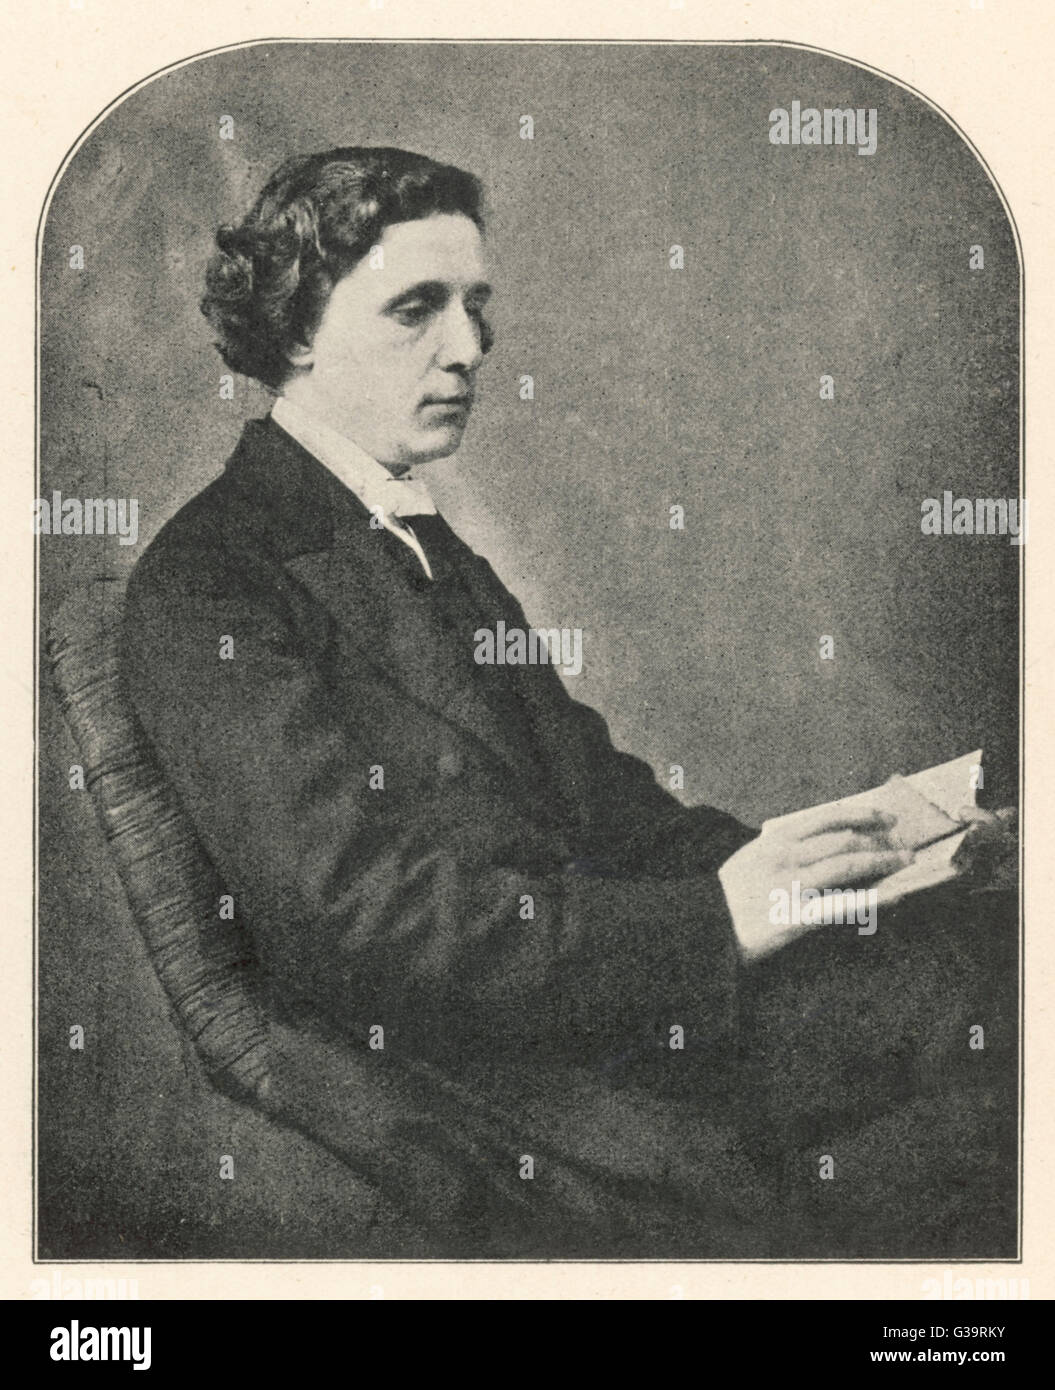 LEWIS CARROLL alias englischer Mathematiker CHARLES LUTWIDGE DODGSON, Pfarrer und Schriftsteller - Schöpfer von 'Alice' Datum: 1832-1898 Stockfoto